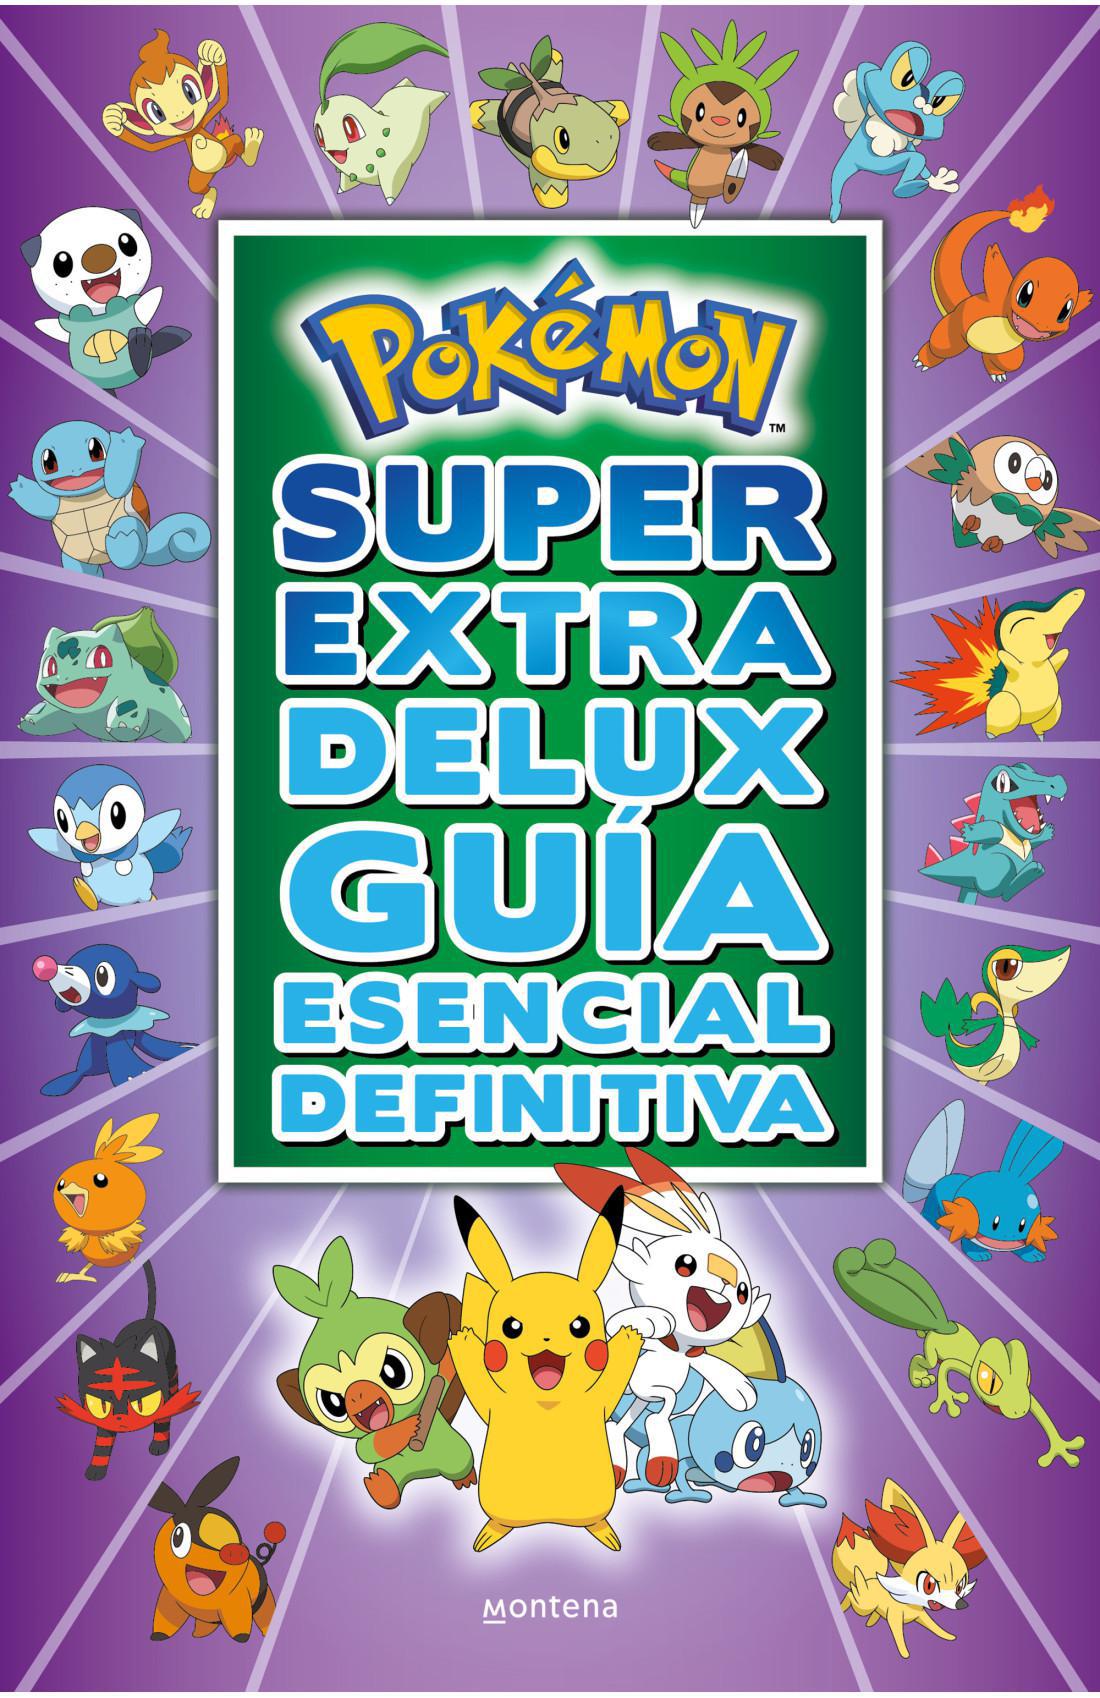 Pokemon Super Extra Delux Guia Esencial Definitiva - The Pokemon Company